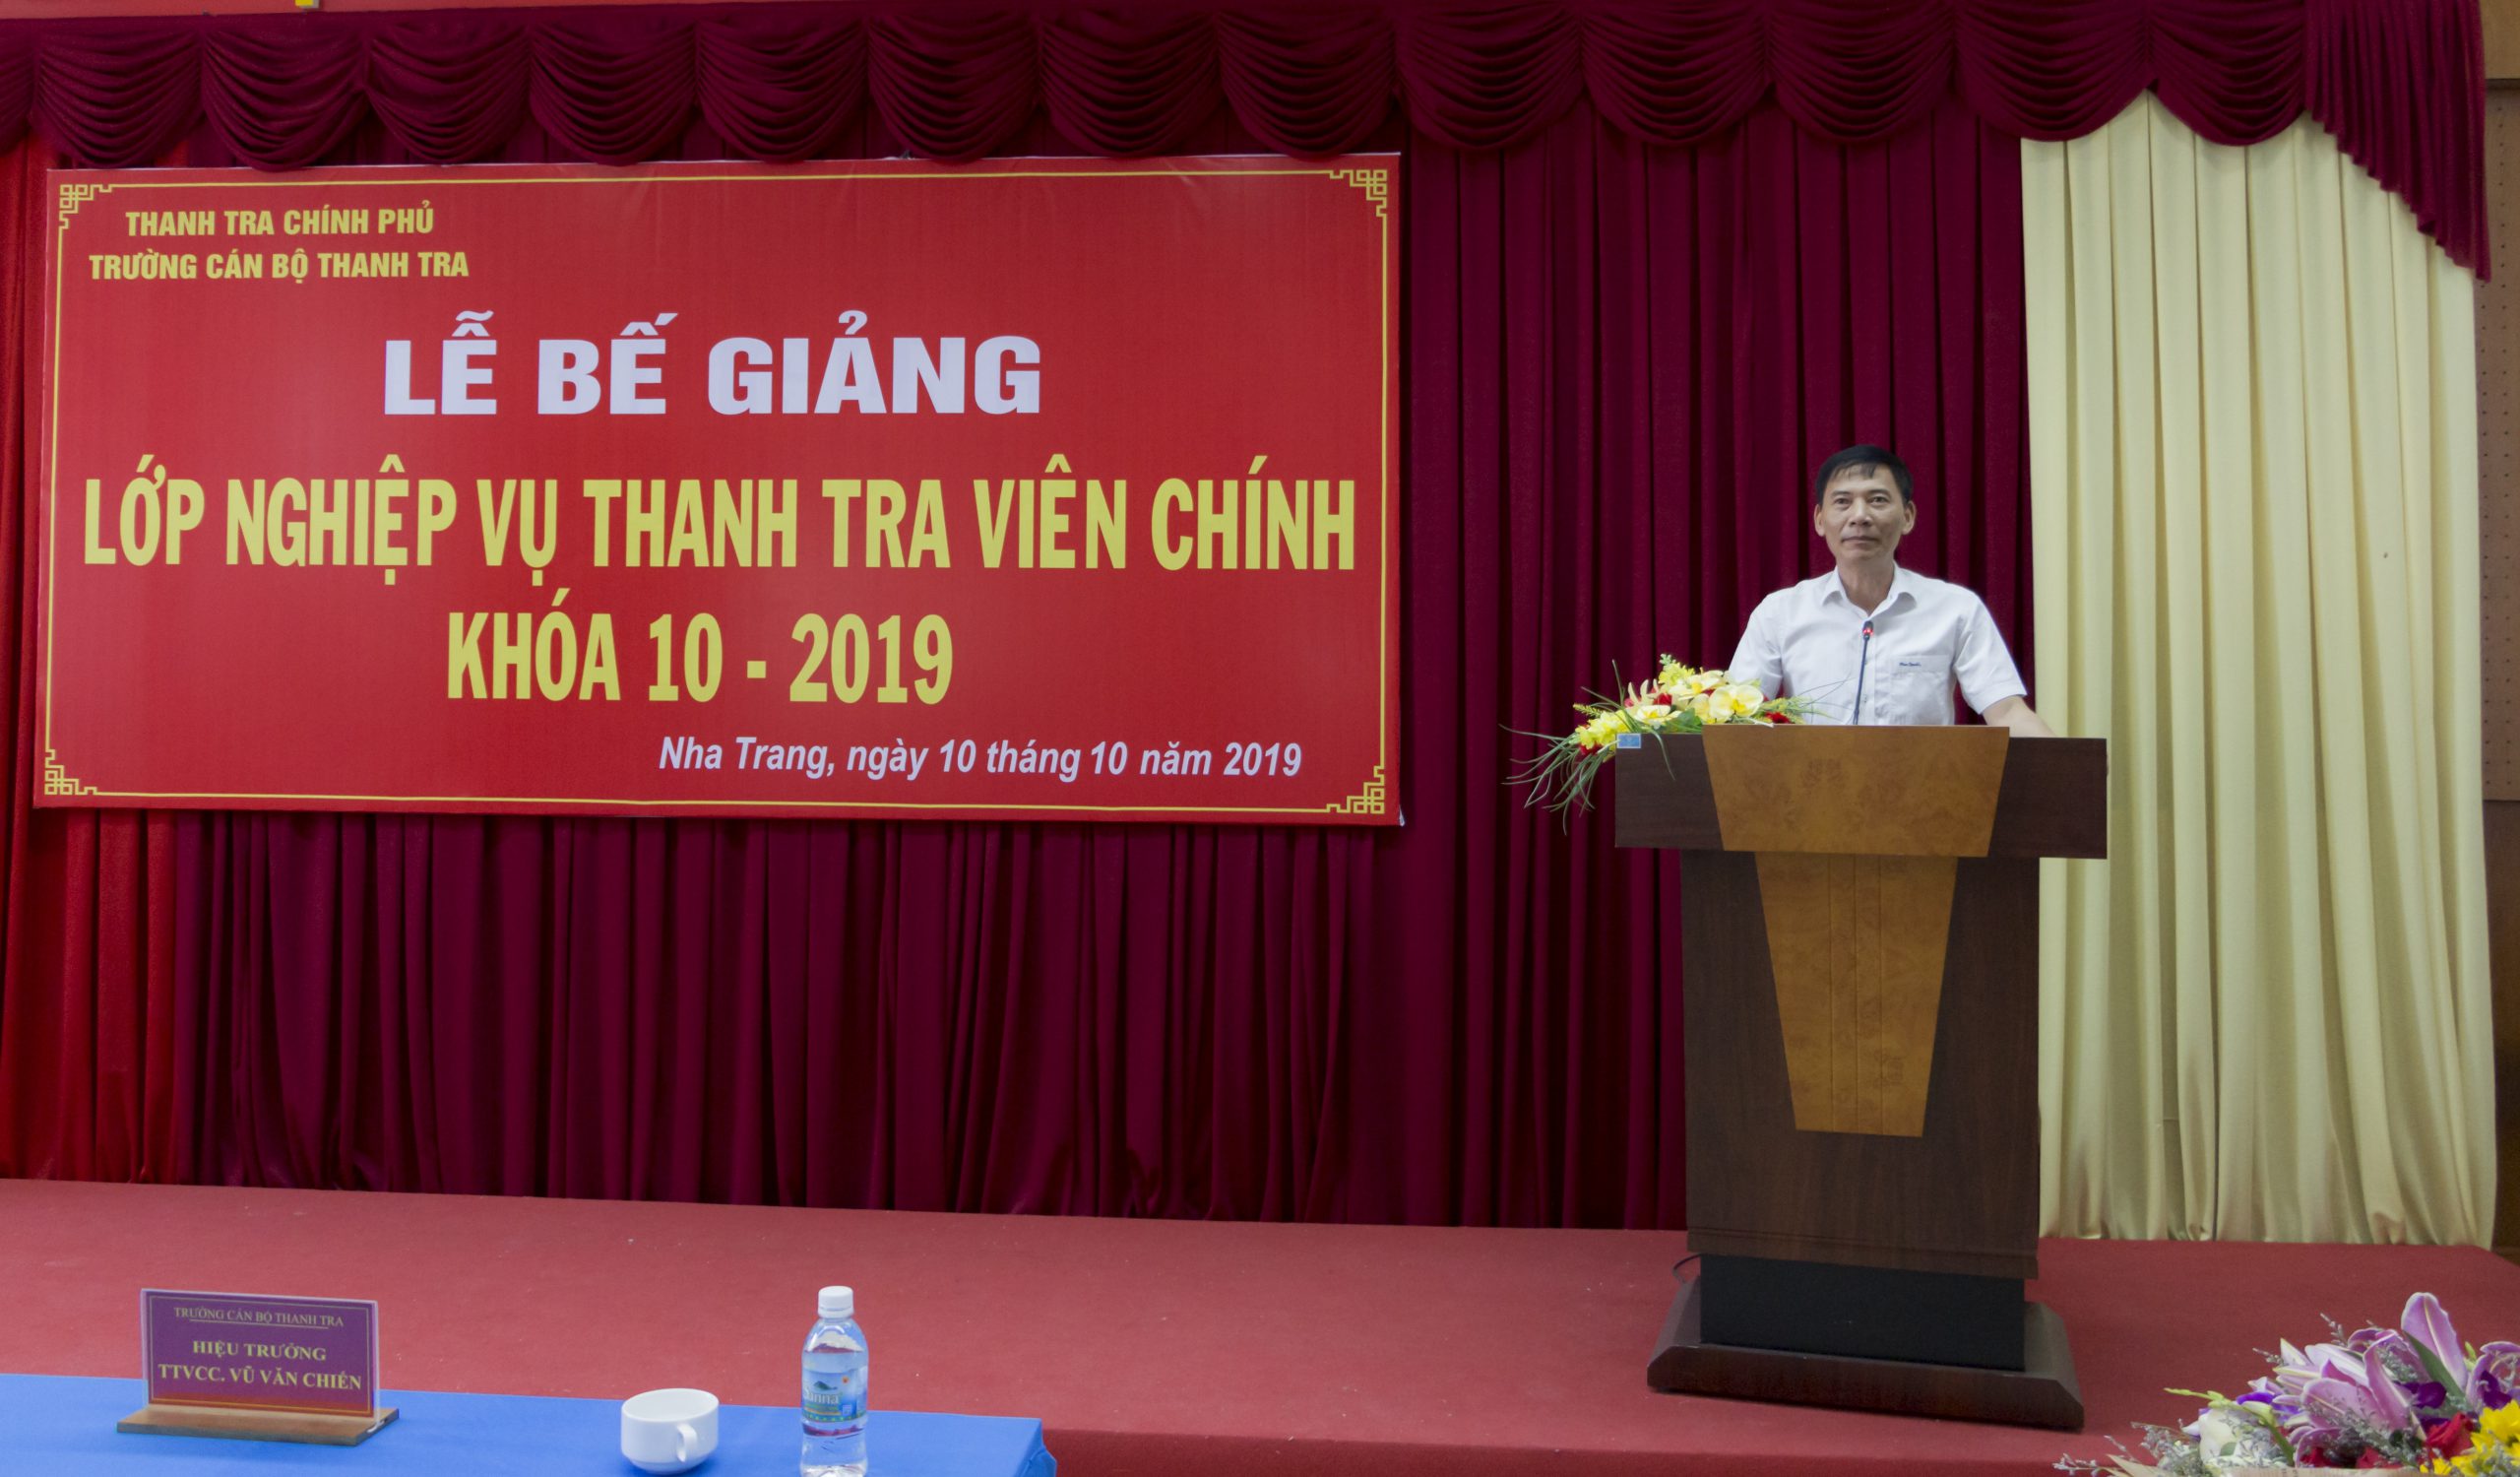 Ông Vũ Văn chiến TTVCC Hiệu trưởng Trg CBTT phát biểu bế giảng khóa học